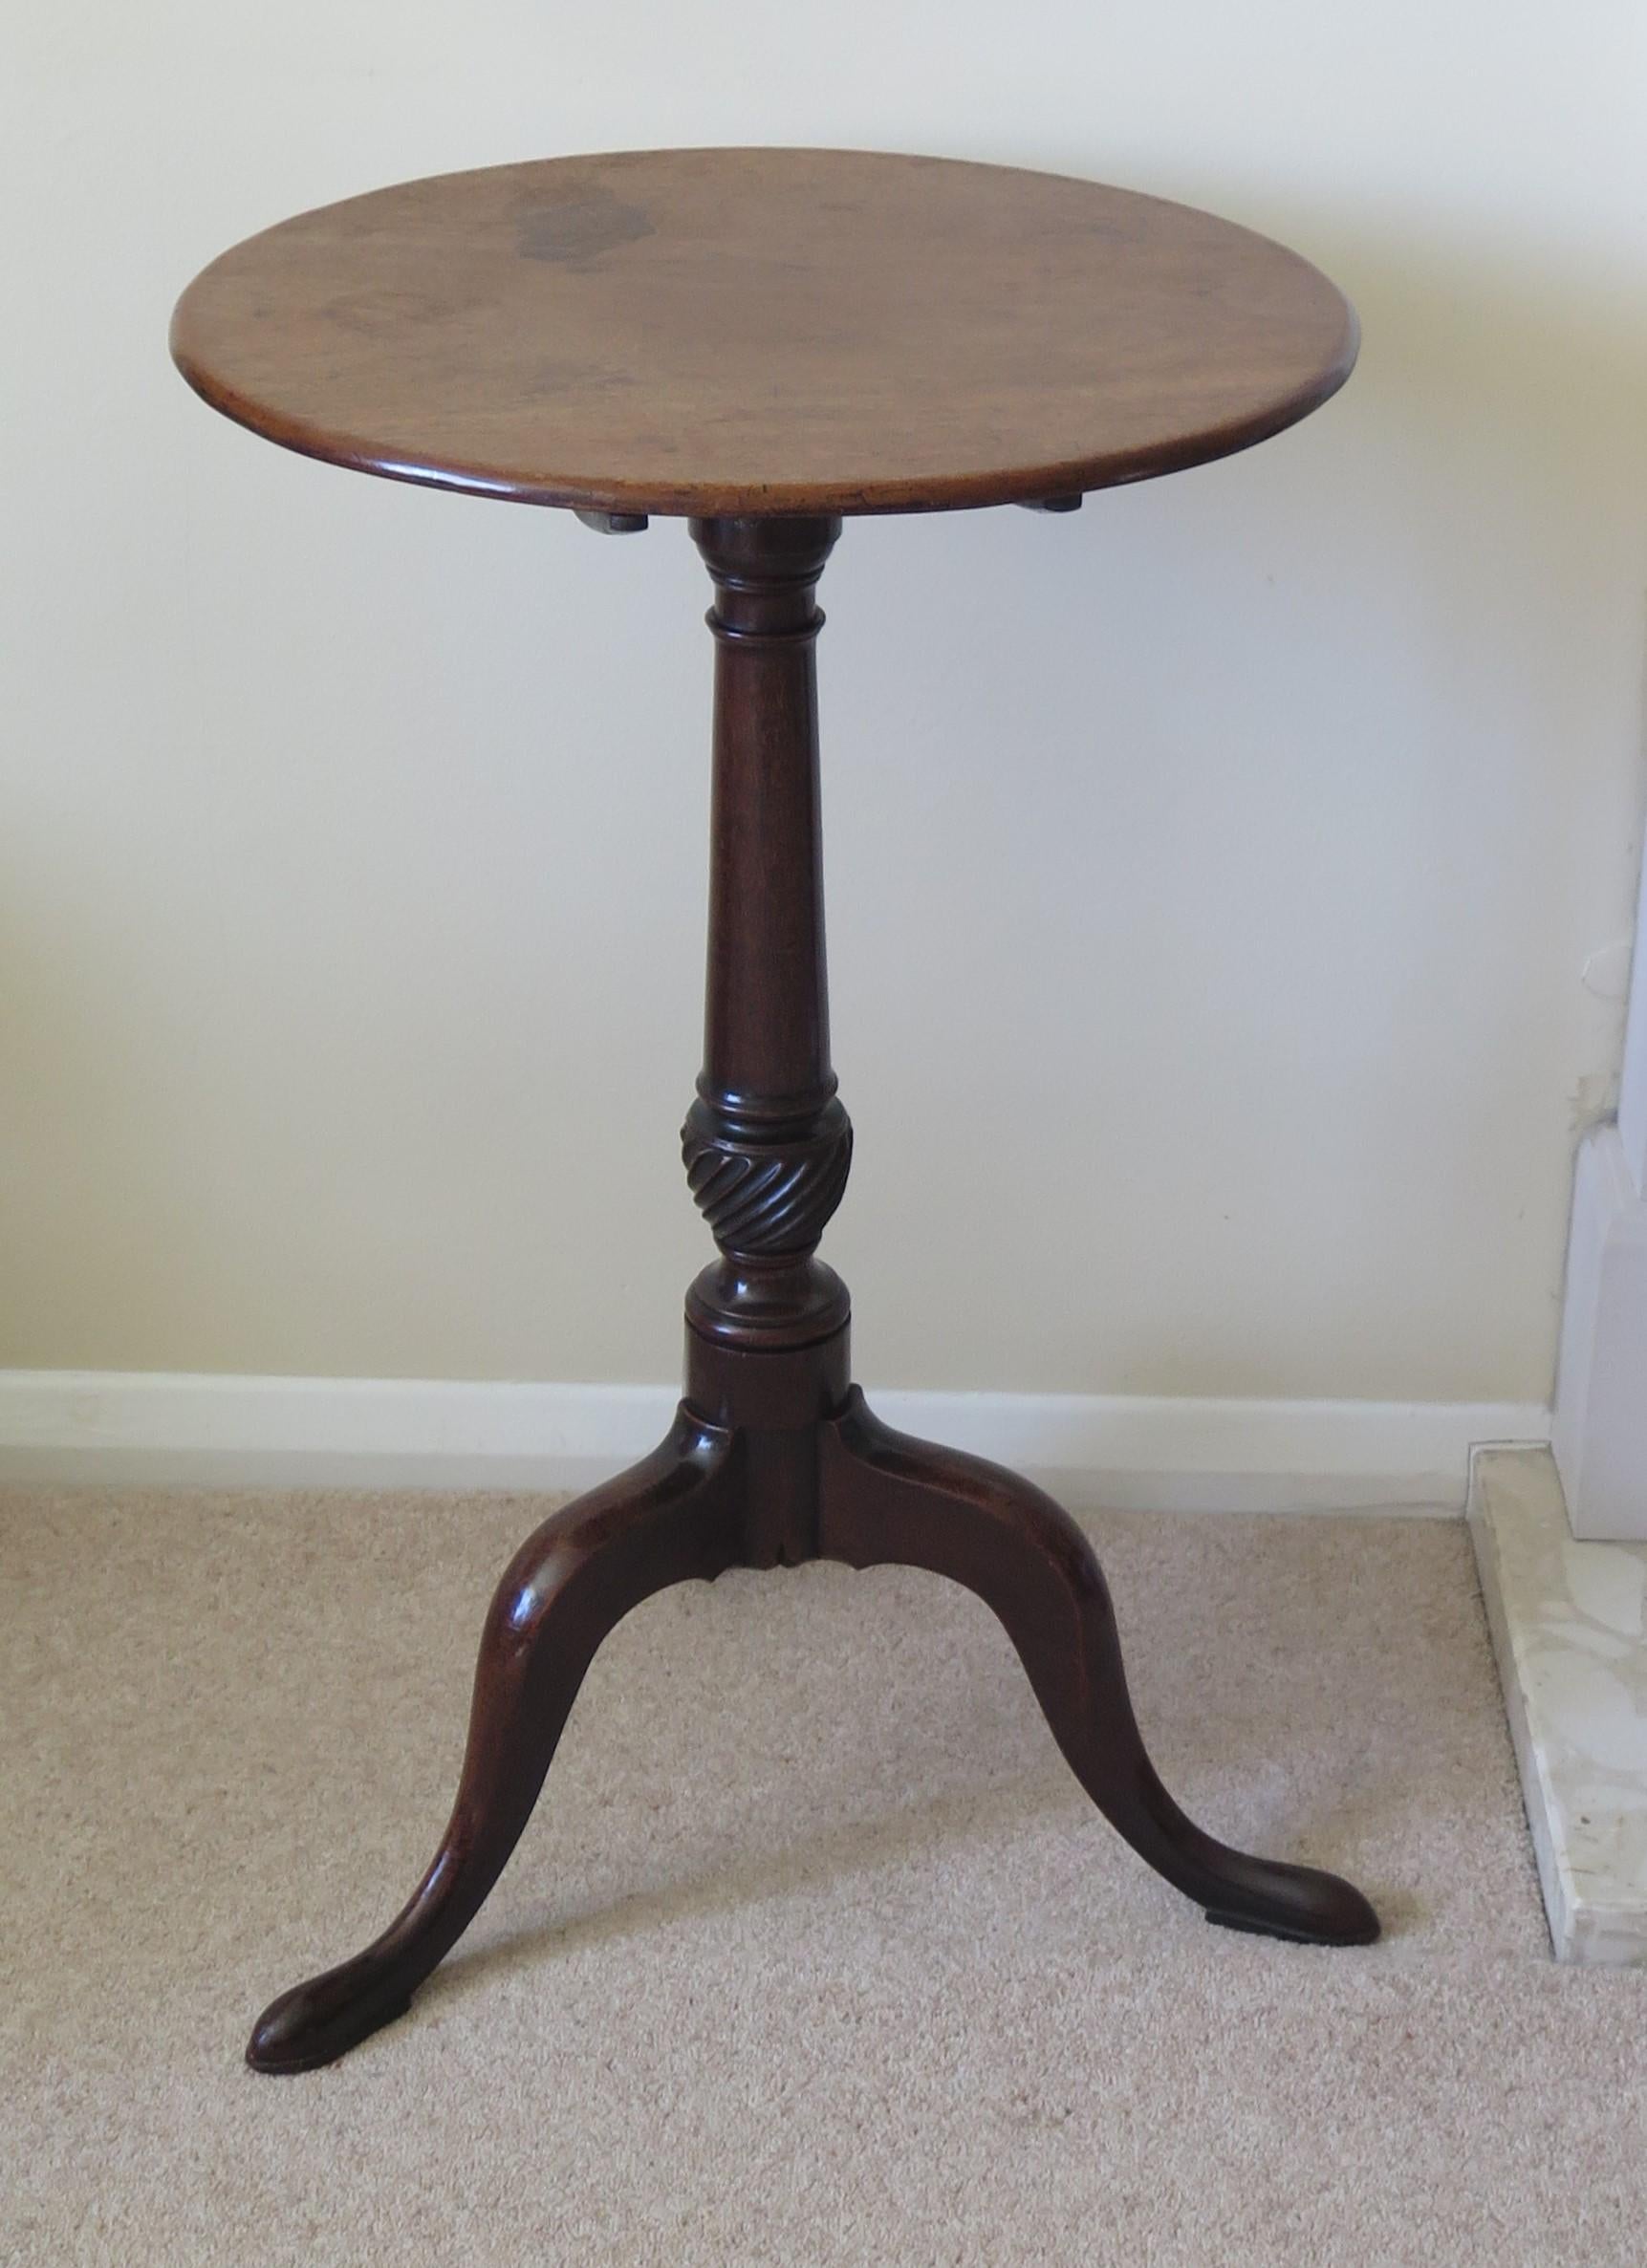 Dies ist ein eleganter und schön proportionierter Tisch aus massivem Hartholz, ein Dreibein-Tisch oder ein Weintisch mit einer kippbaren Platte und stammt aus der mittleren georgianischen Chippendale-Periode, um 1760.

Die runde Platte ist aus einem